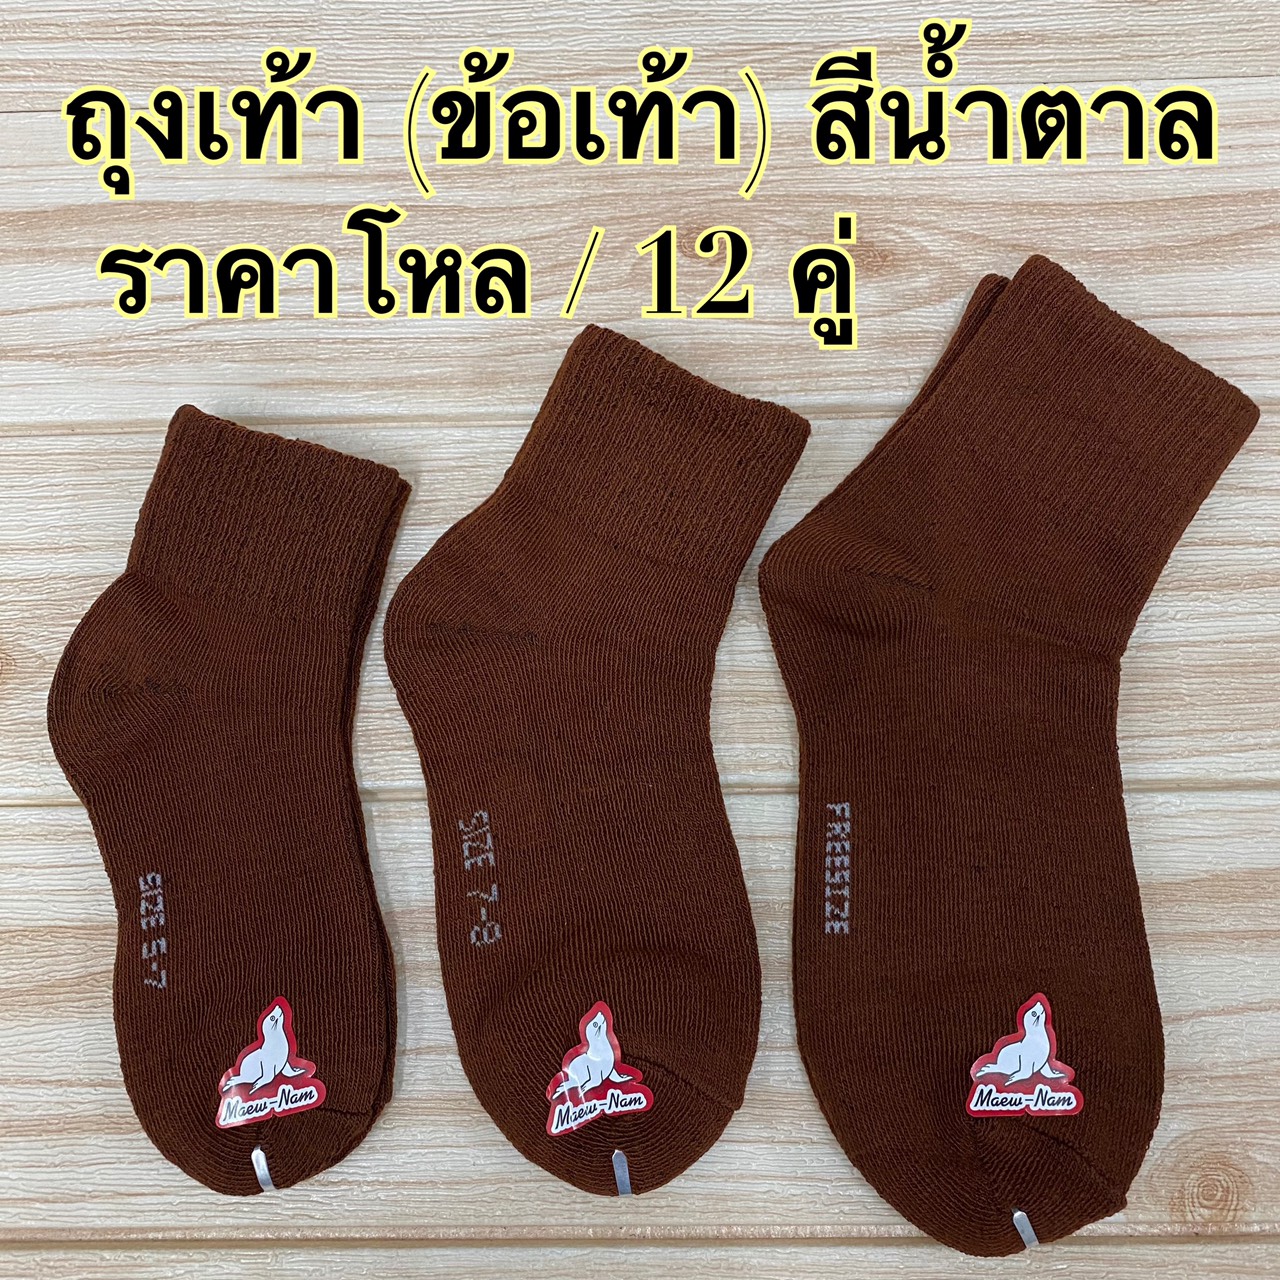 ถุงเท้า นักเรียน  (ข้อเท้า  ) สีน้ำตาล  5-7,7-9,Free size ( ราคาโหล)